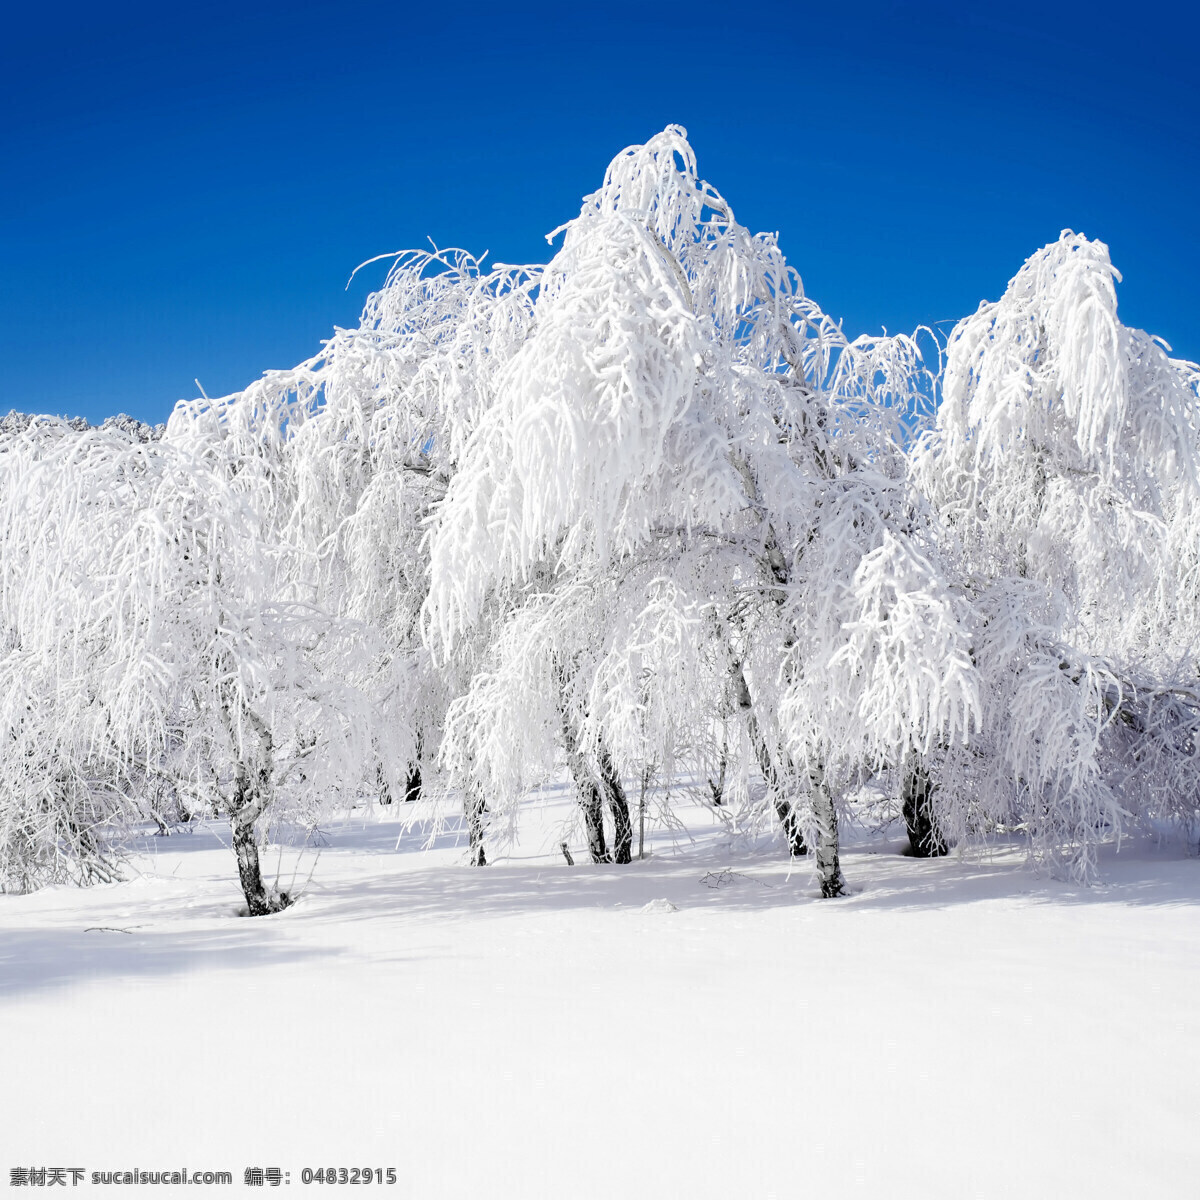 冬天雪景 冬季 冬天 雪景 美丽风景 景色 美景 积雪 雪地 森林 树木 自然风景 自然景观 白色